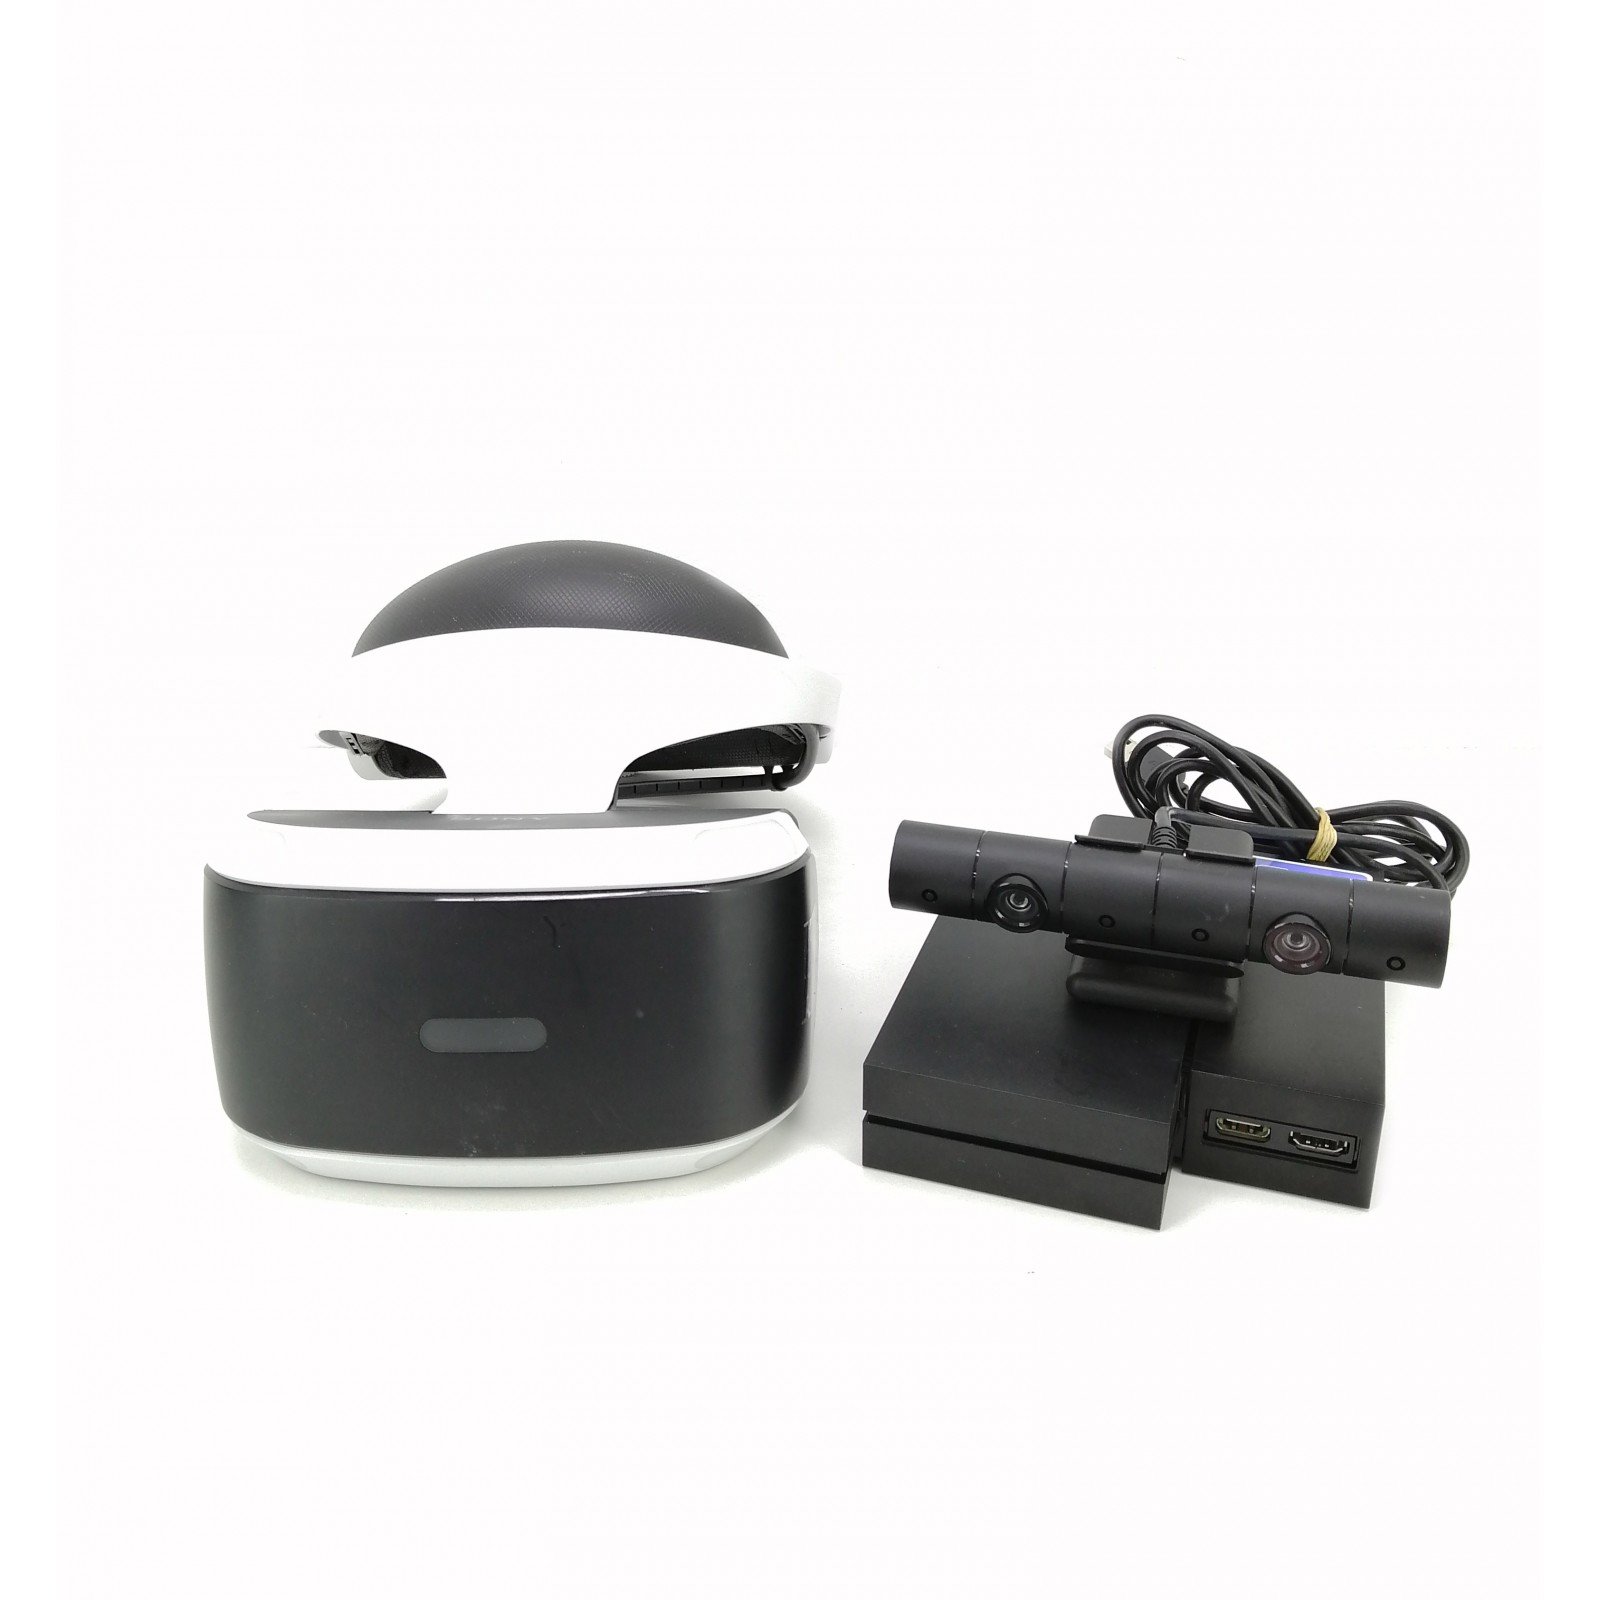 secuestrar Servicio almuerzo Sony VR Gafas Realidad Virtual + PS4 Camera V2 de segunda mano